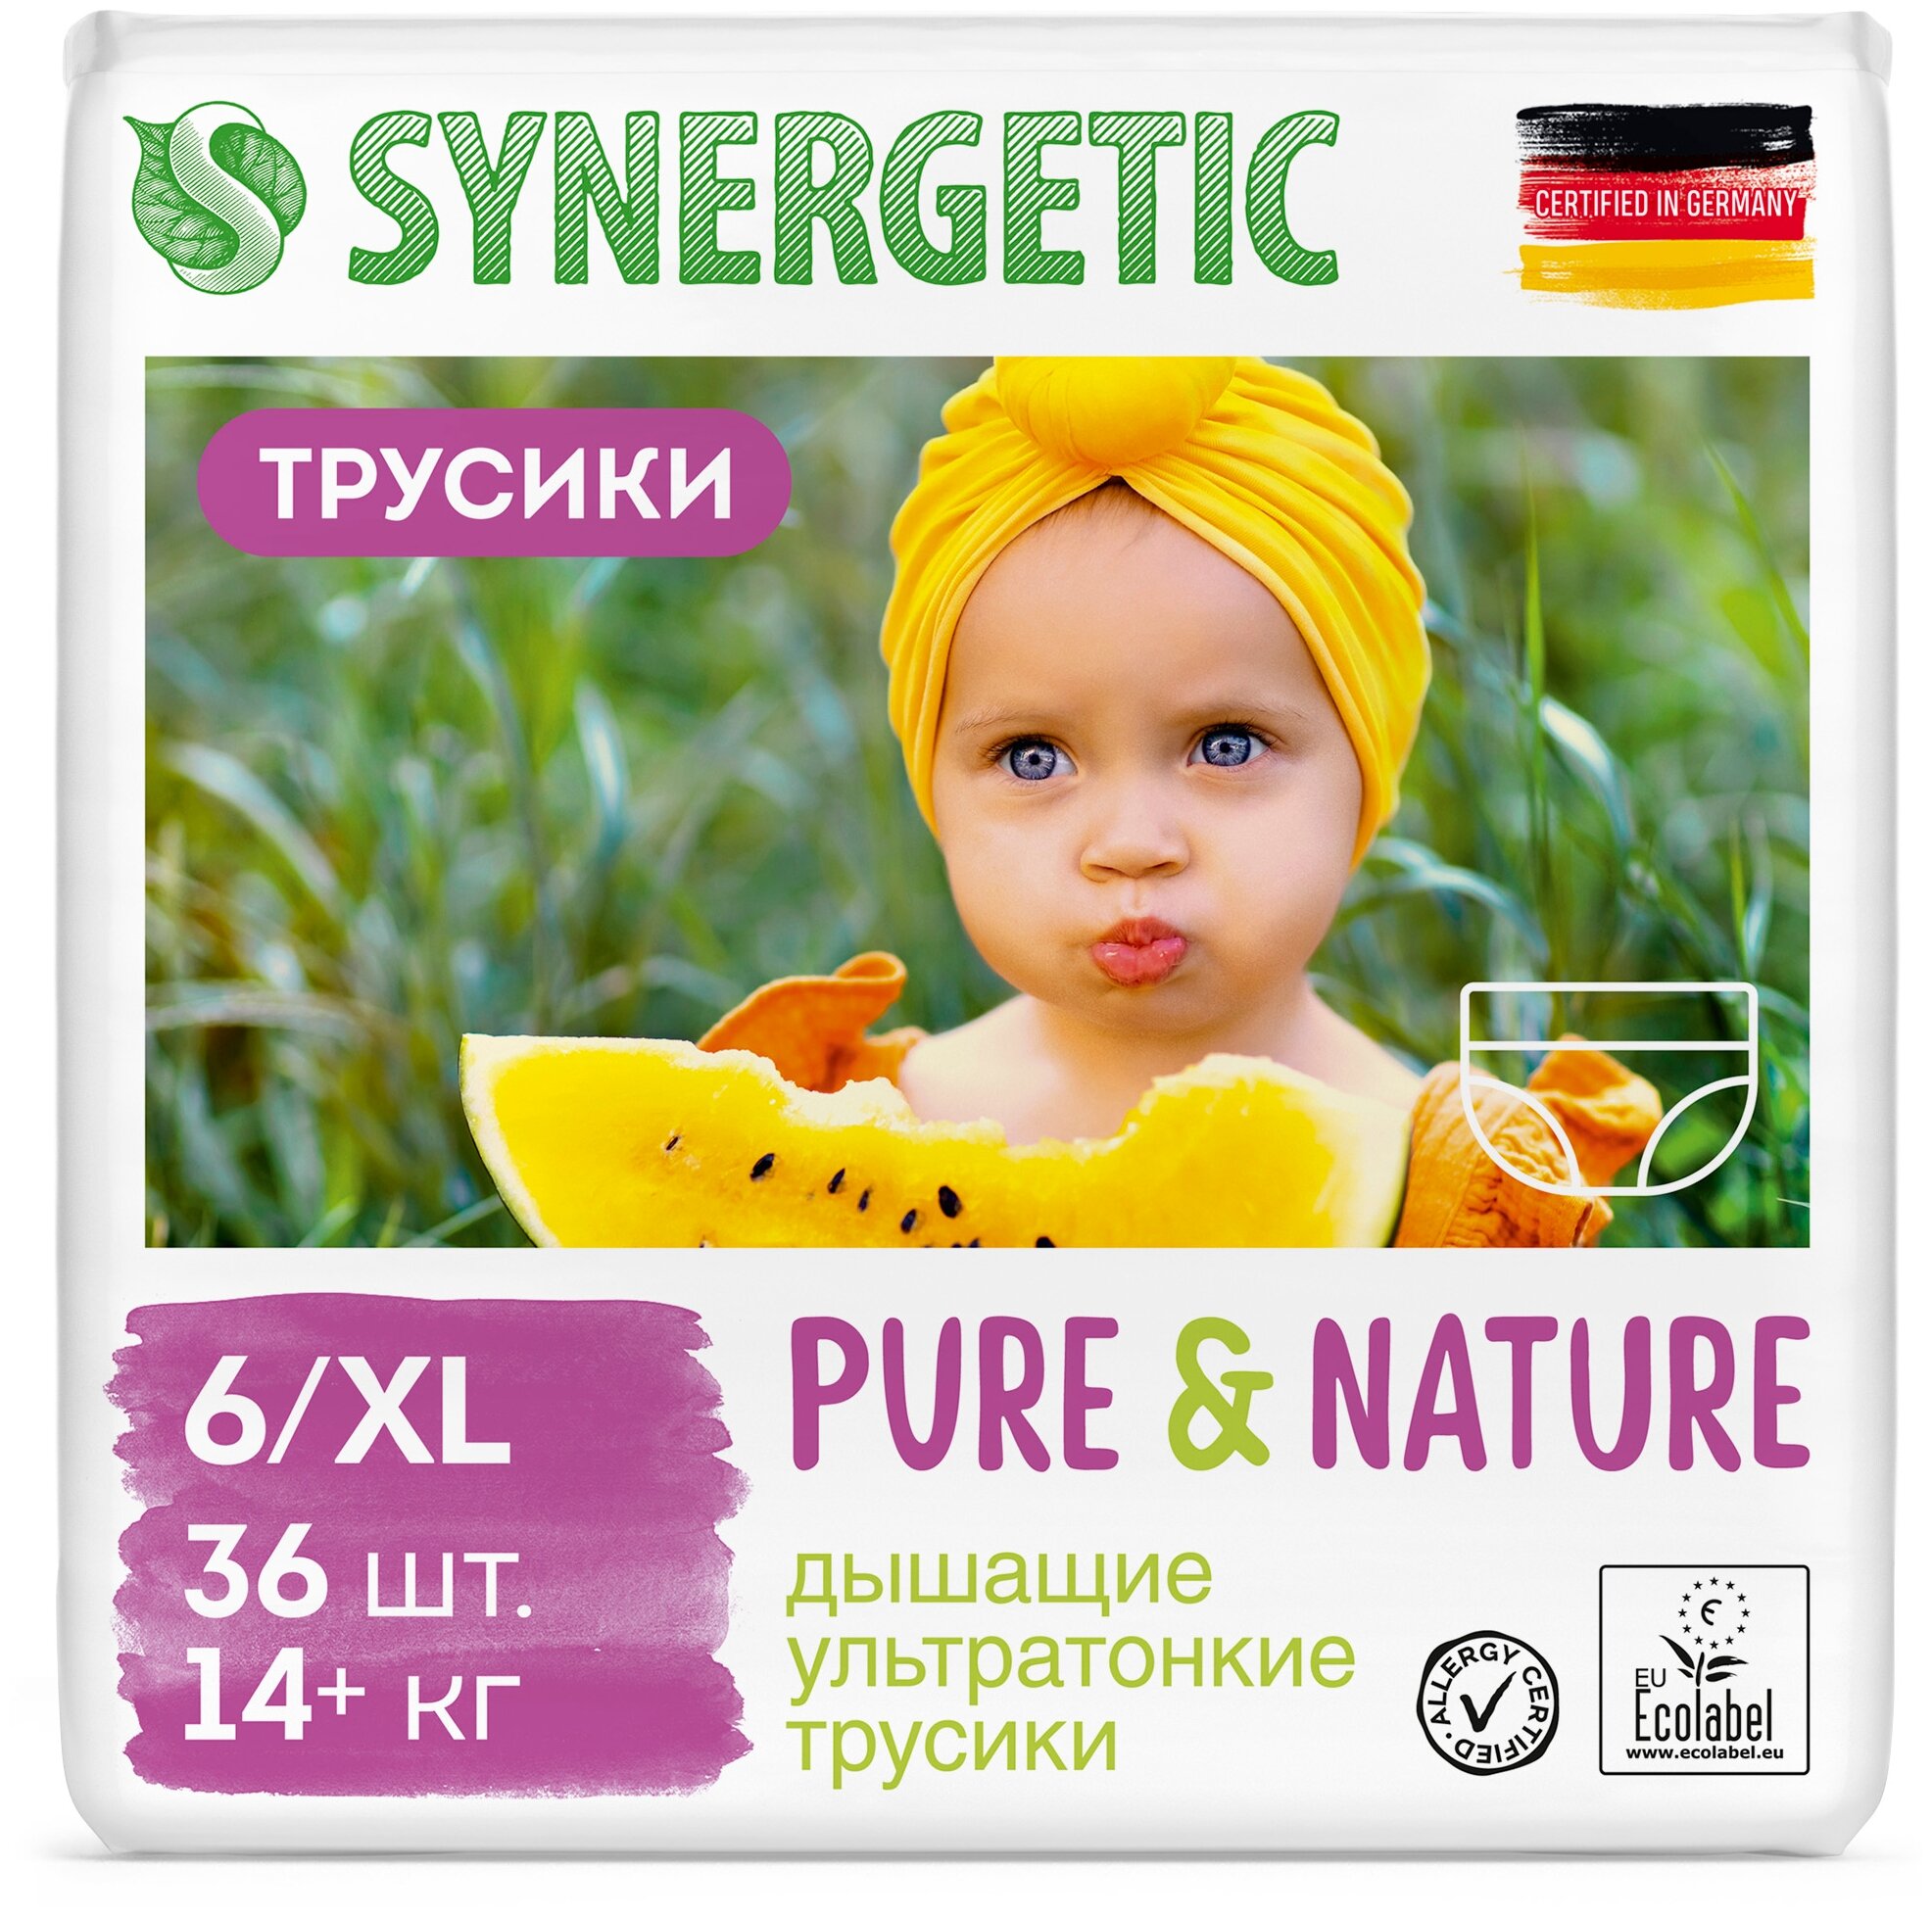 Дышащие ультратонкие детские подгузники-трусики SYNERGETIC Pure&Nature, 6 / XL (14+ кг), 36шт.